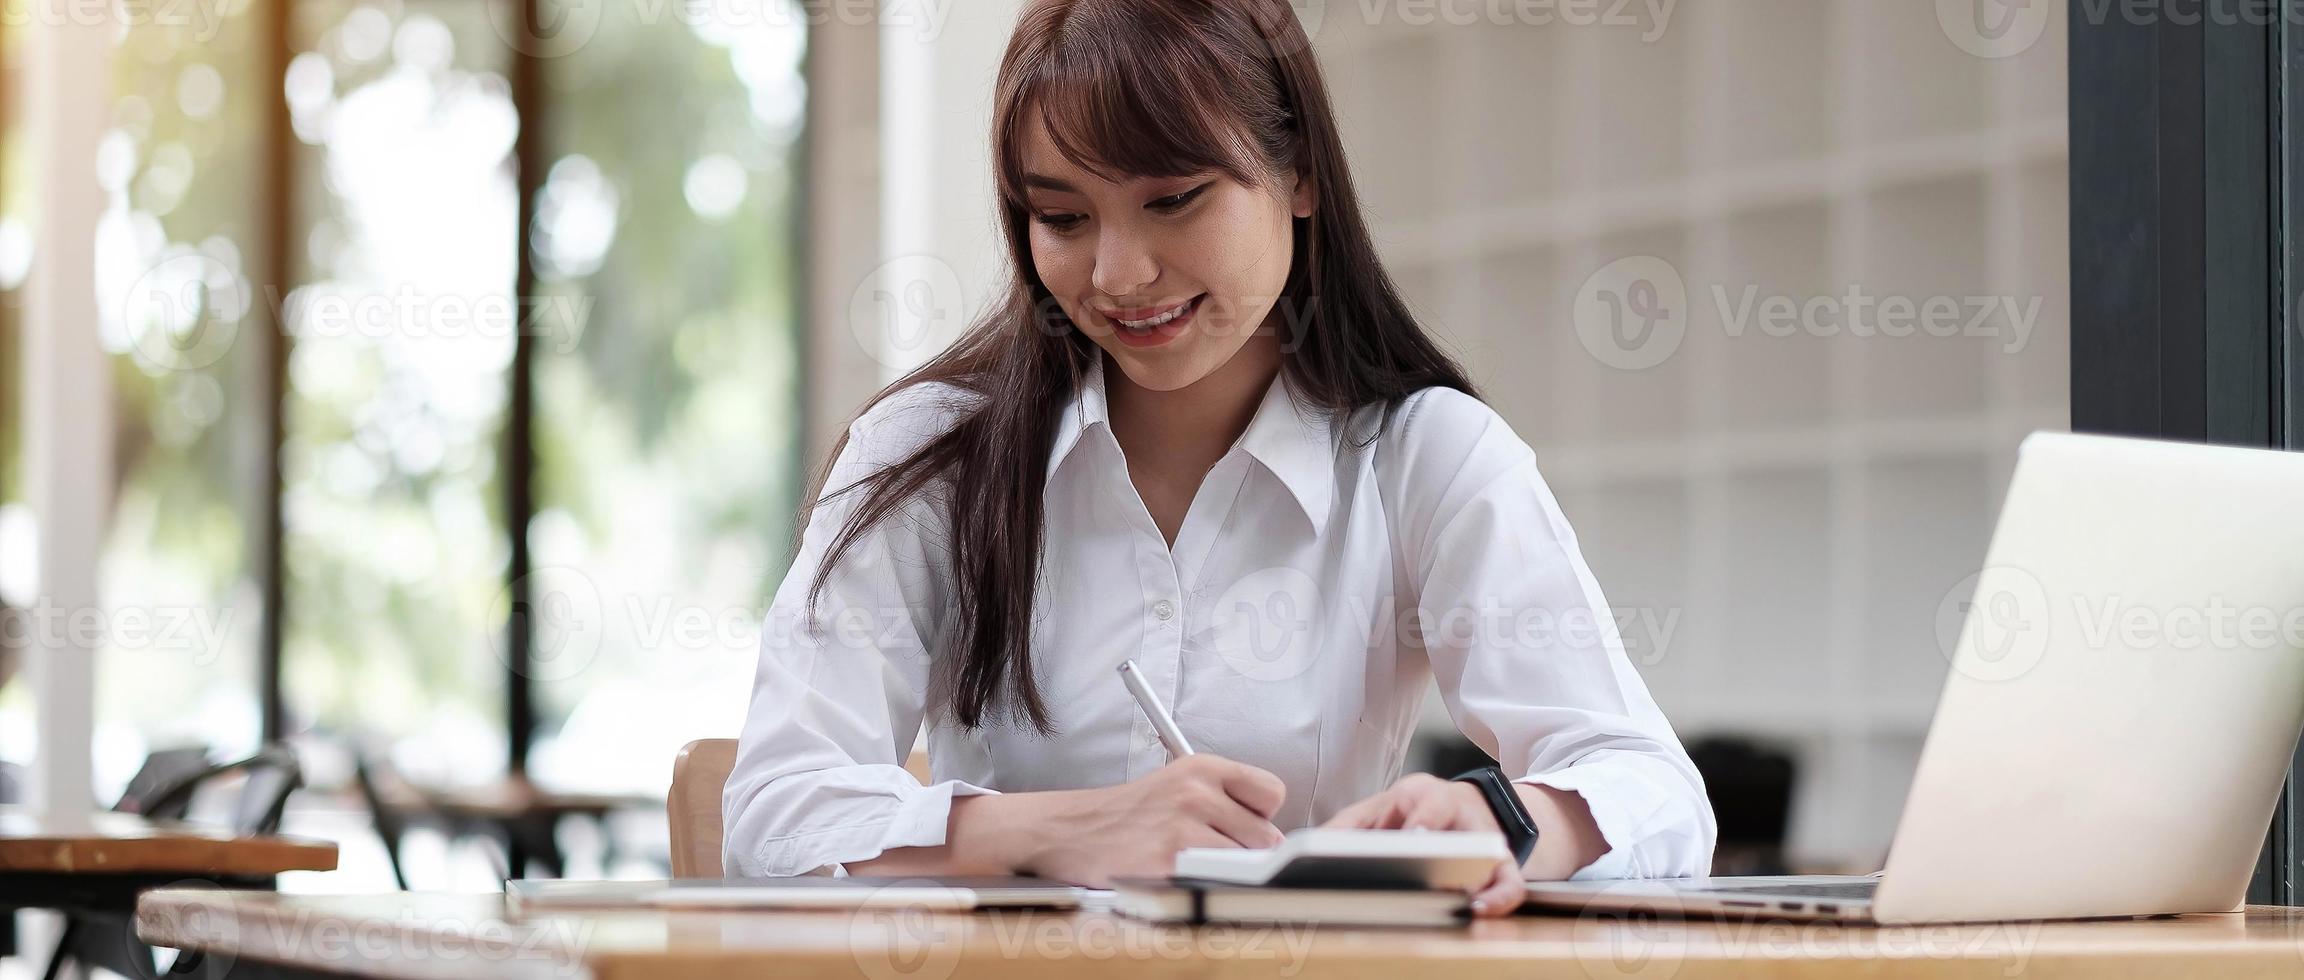 porträtt av en ganska ung kvinna som studerar medan du sitter vid bordet foto